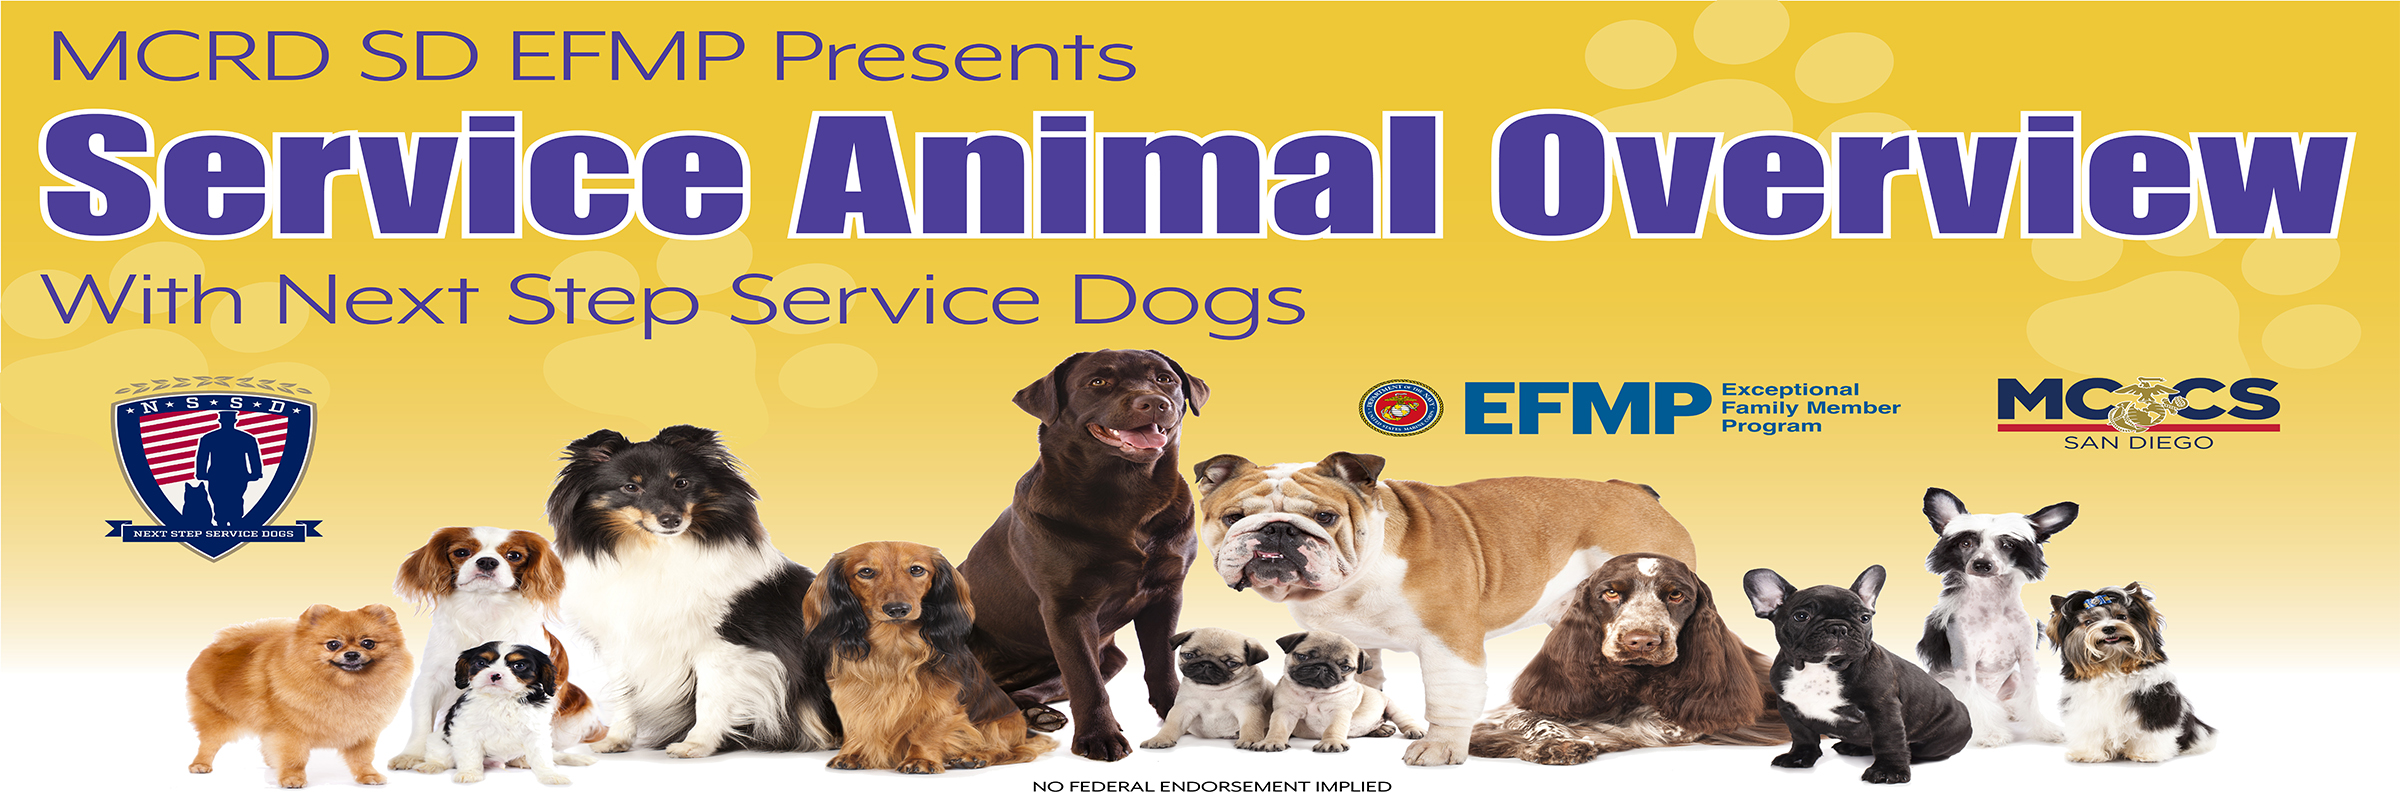 Service Animals Overview - 2400 x 800.jpg